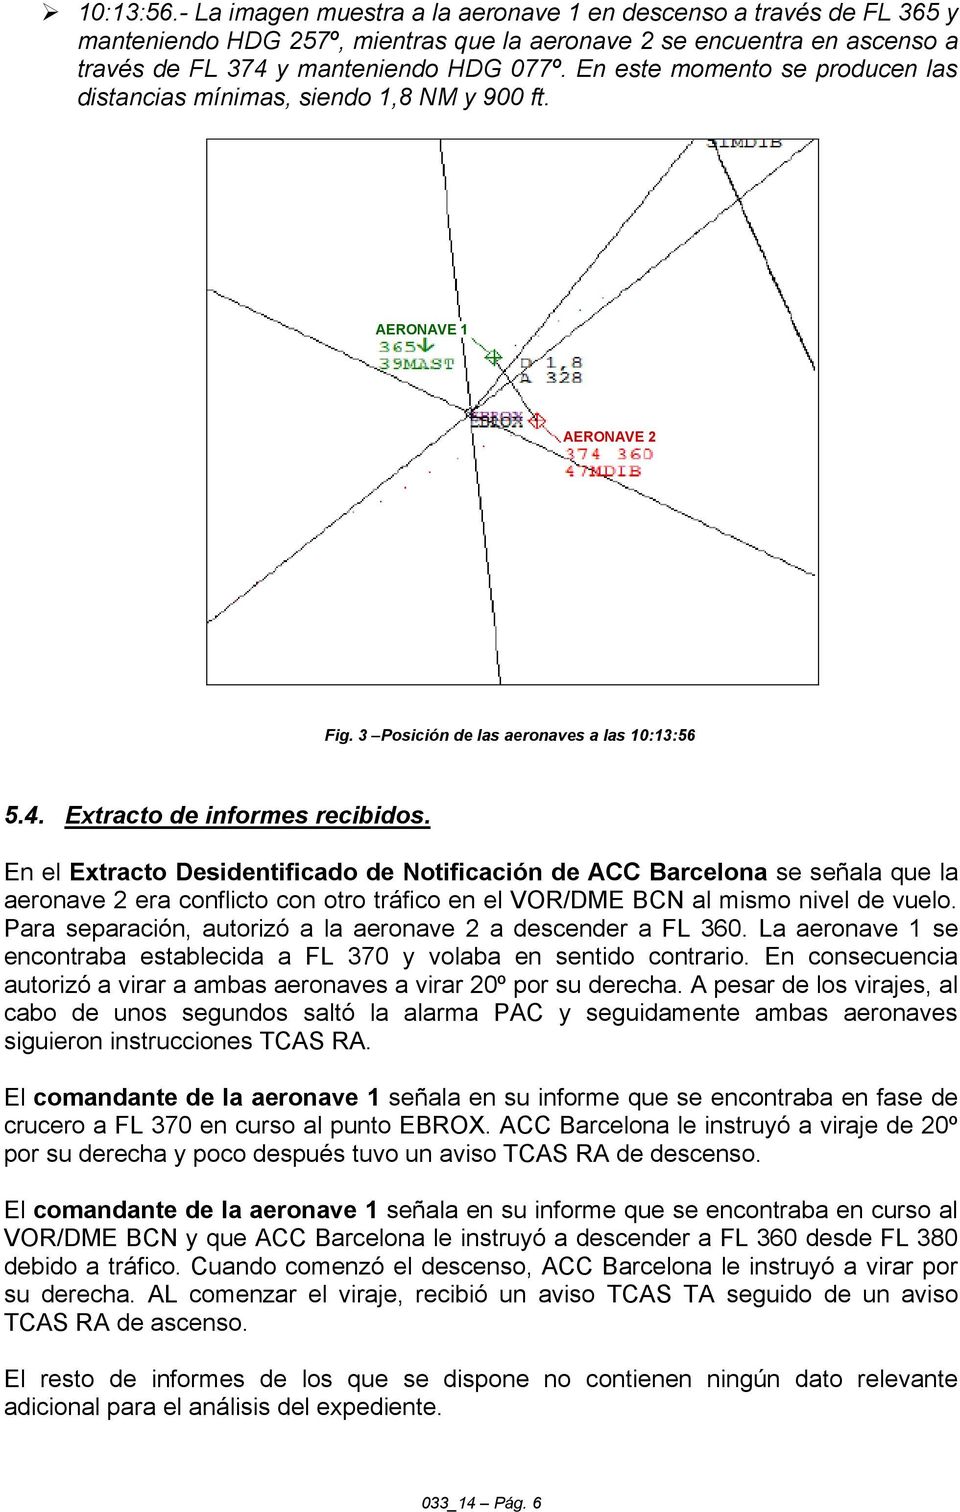 En el Extracto Desidentificado de Notificación de ACC Barcelona se señala que la aeronave 2 era conflicto con otro tráfico en el VOR/DME BCN al mismo nivel de vuelo.